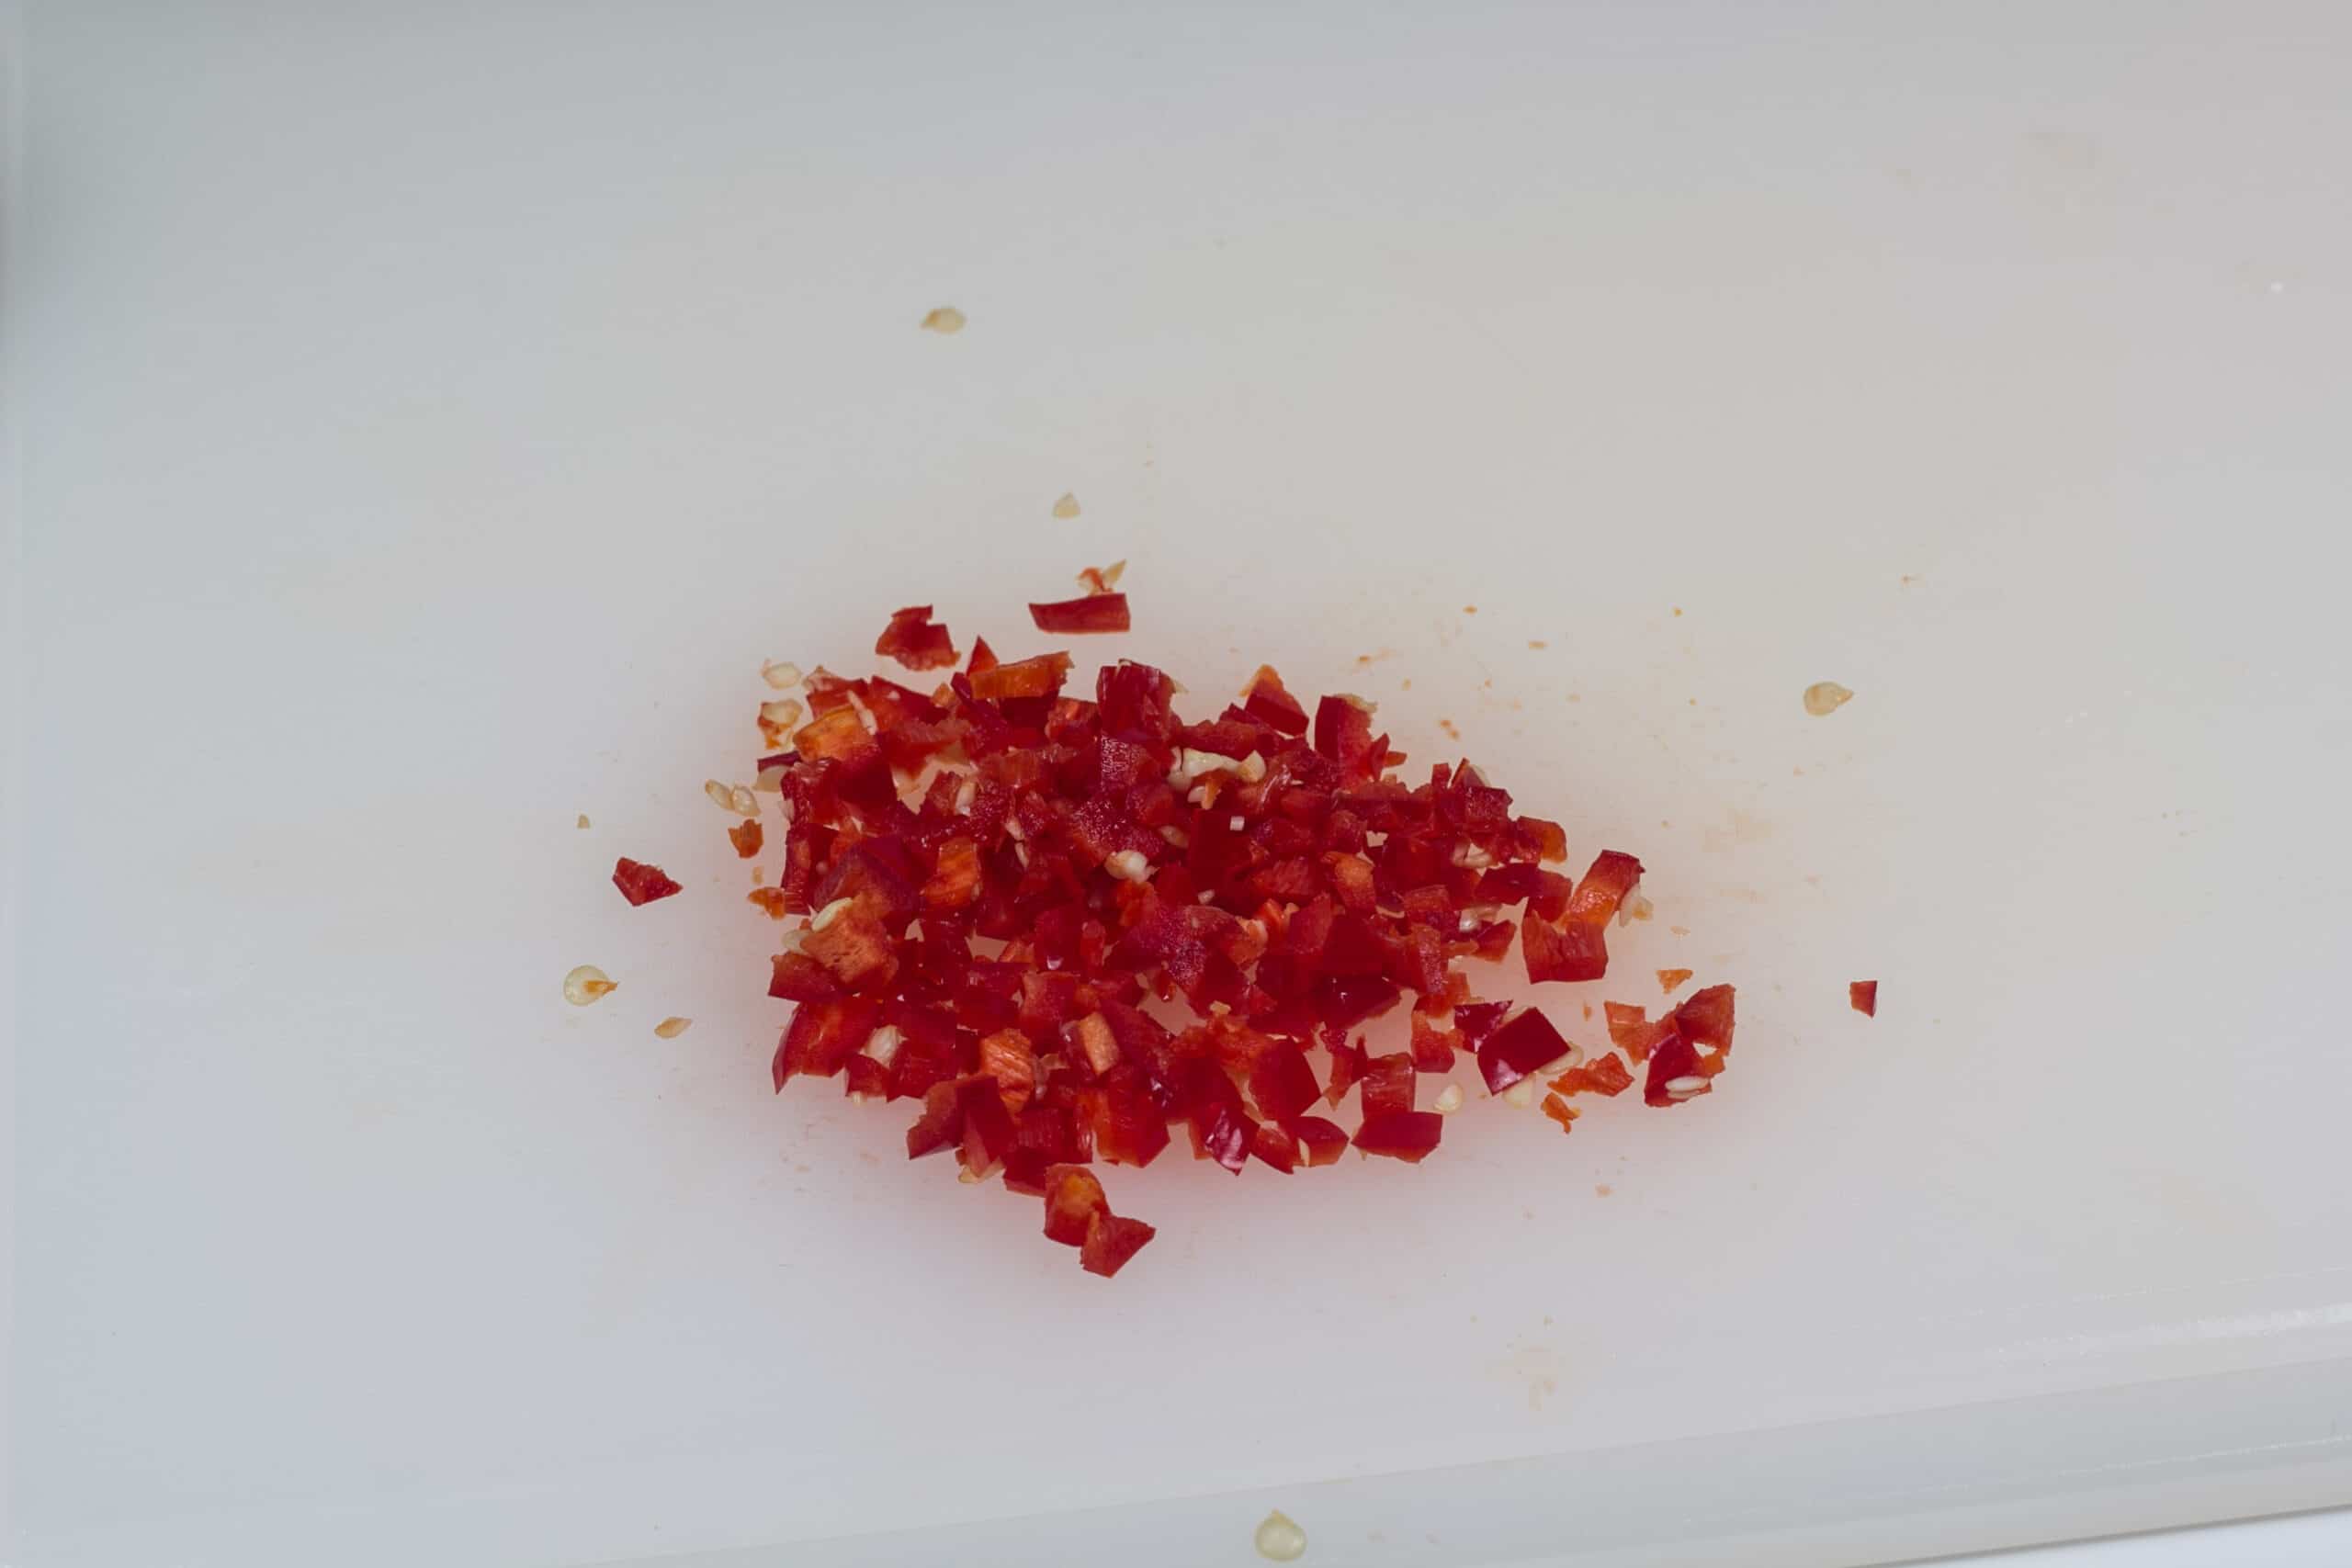 Hakket rød chili